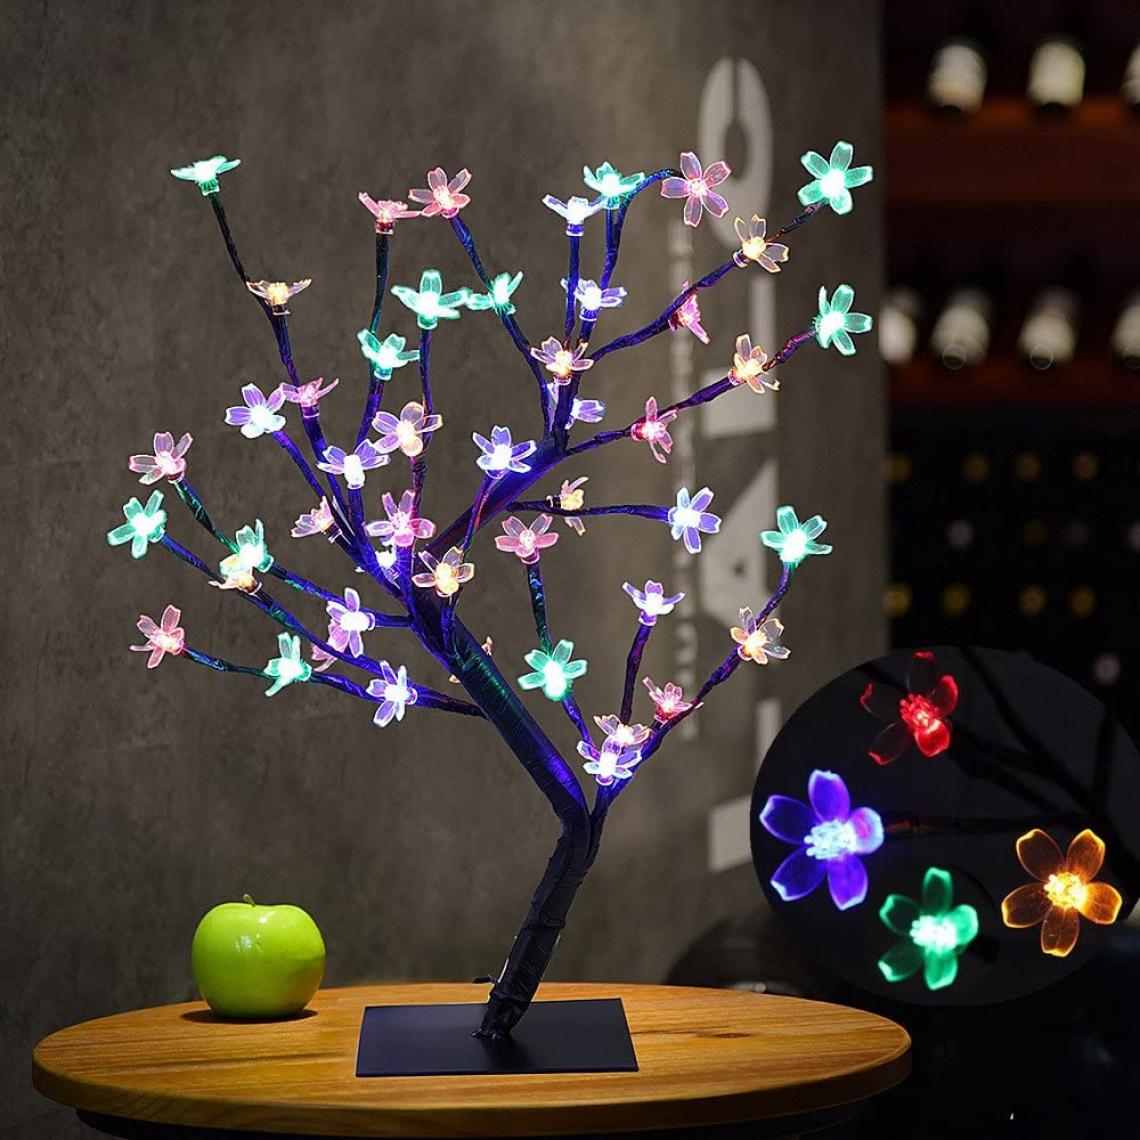 Goeco - LED Lampe de Cerisier, 0.45M 48LED, Arbre Lumineux LED, Branches Noires, pour la décoration de Maison (Multicolore) - Lampe connectée